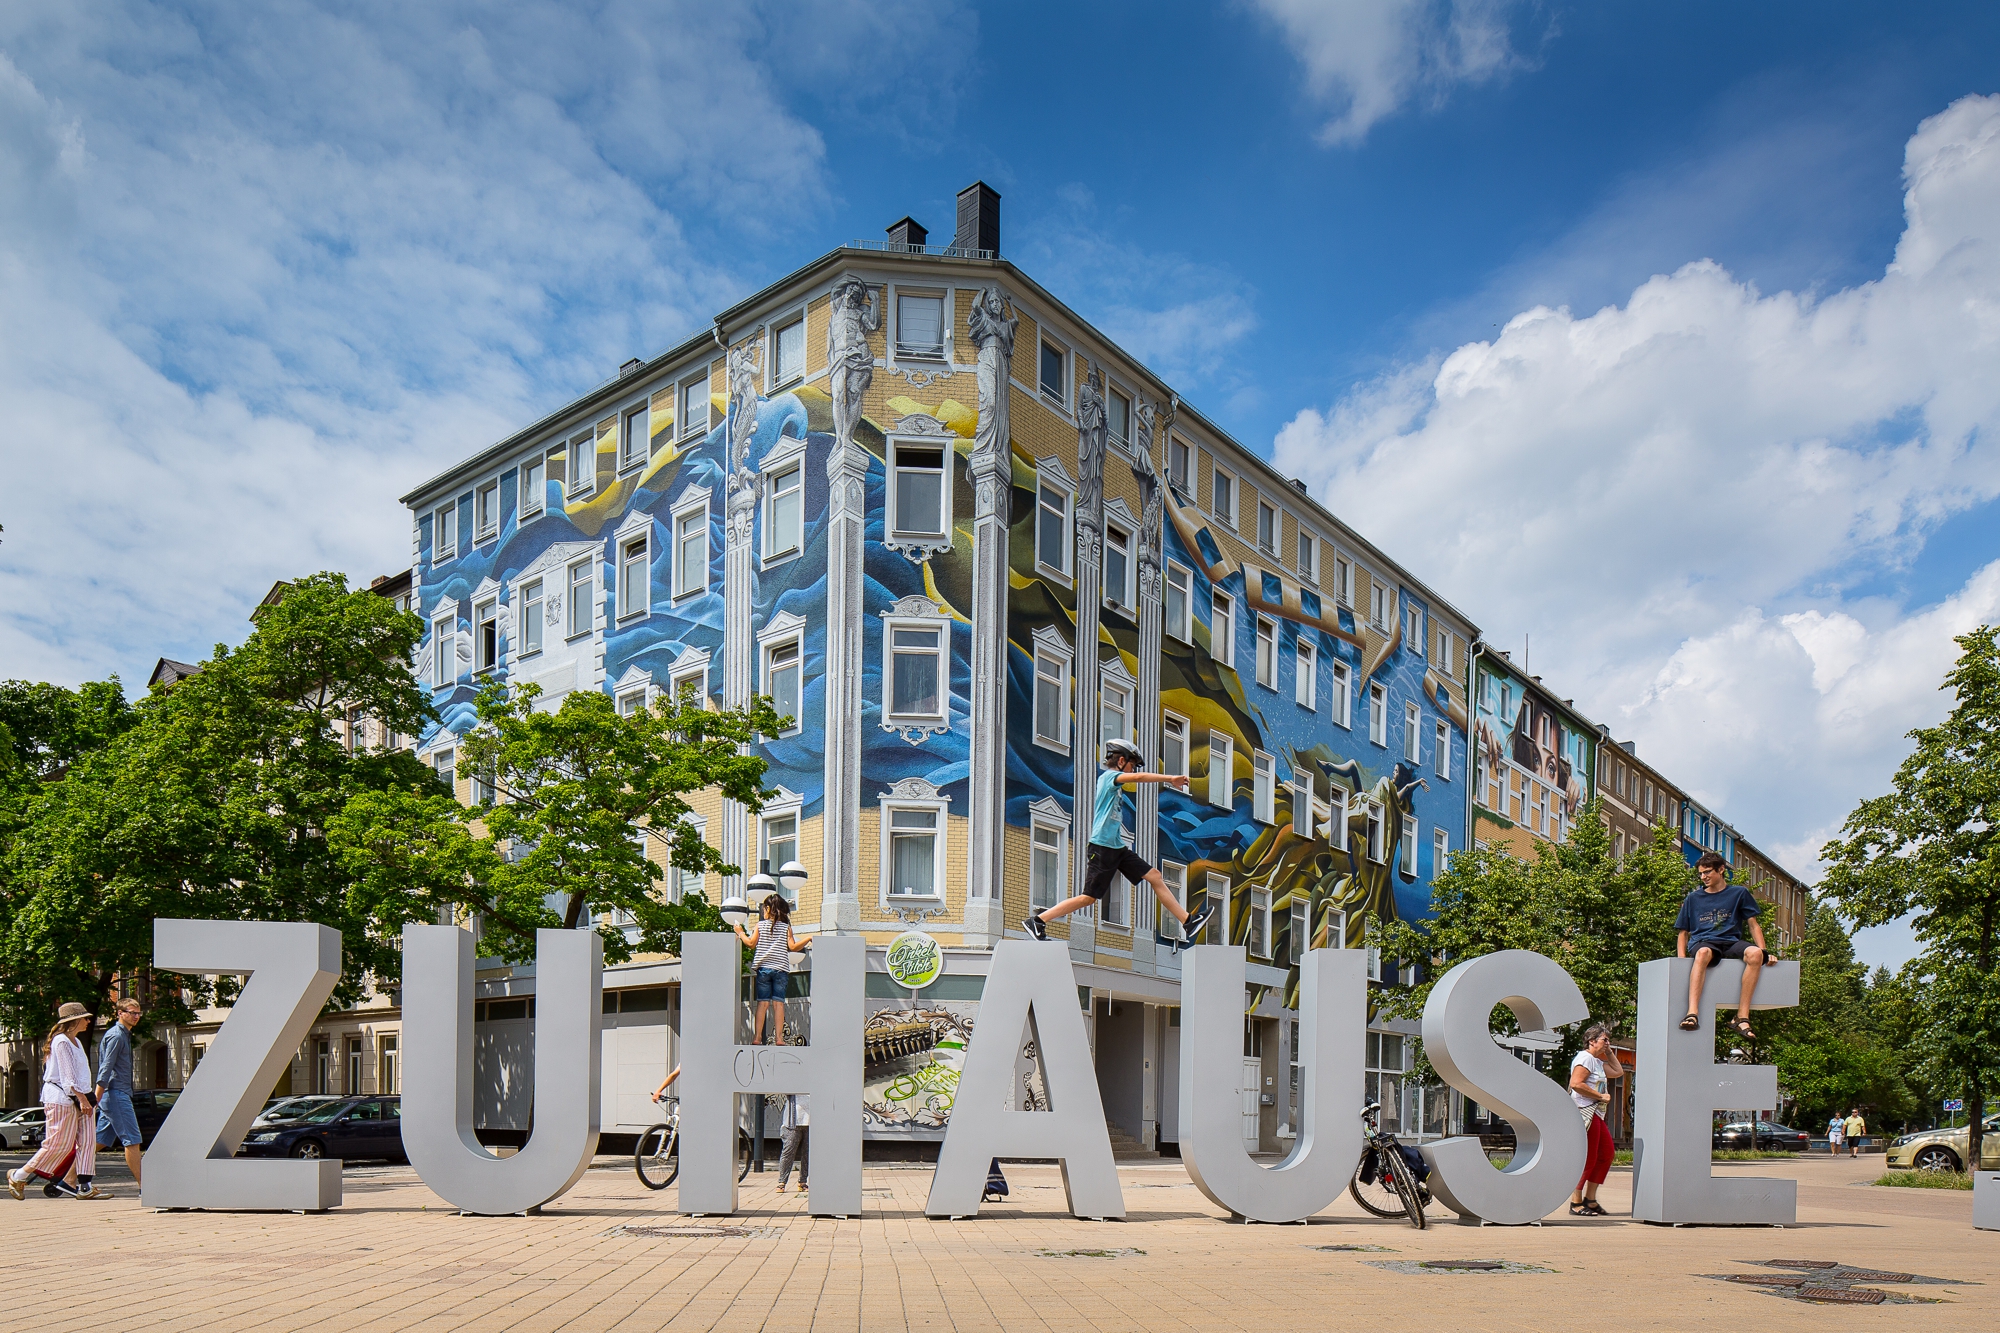 Der Schriftzug "Zuhause" auf dem Brühl steht sinnbildlich für das Lebensgefühl vieler Chemnitzer